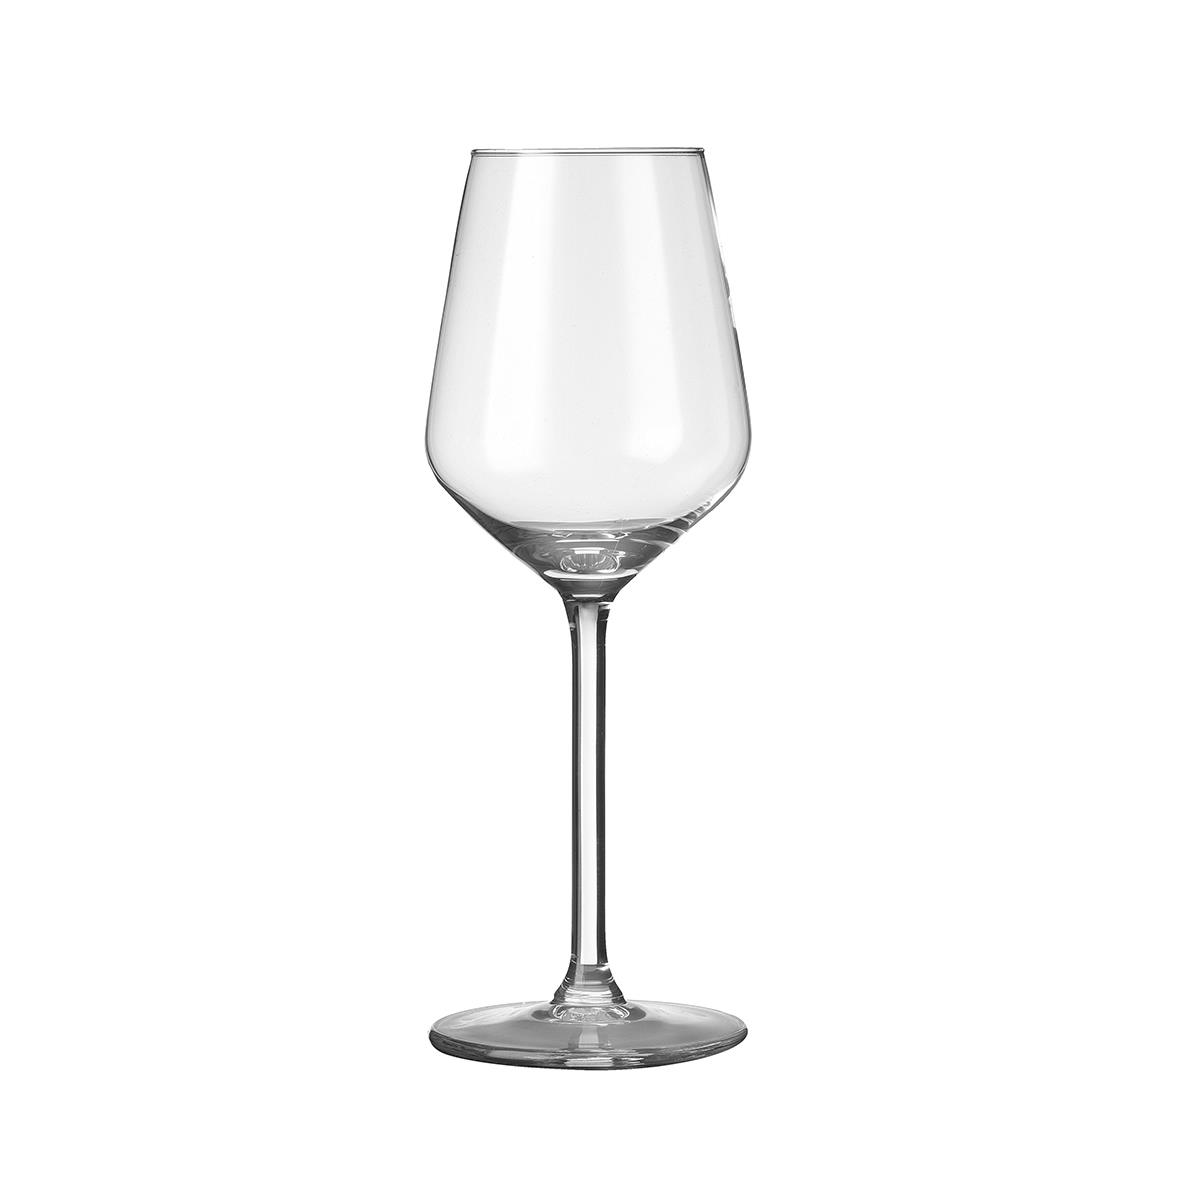 Weinglas Carre mit 29 cl Fassungsvermögen bedrucken oder gravieren lassen